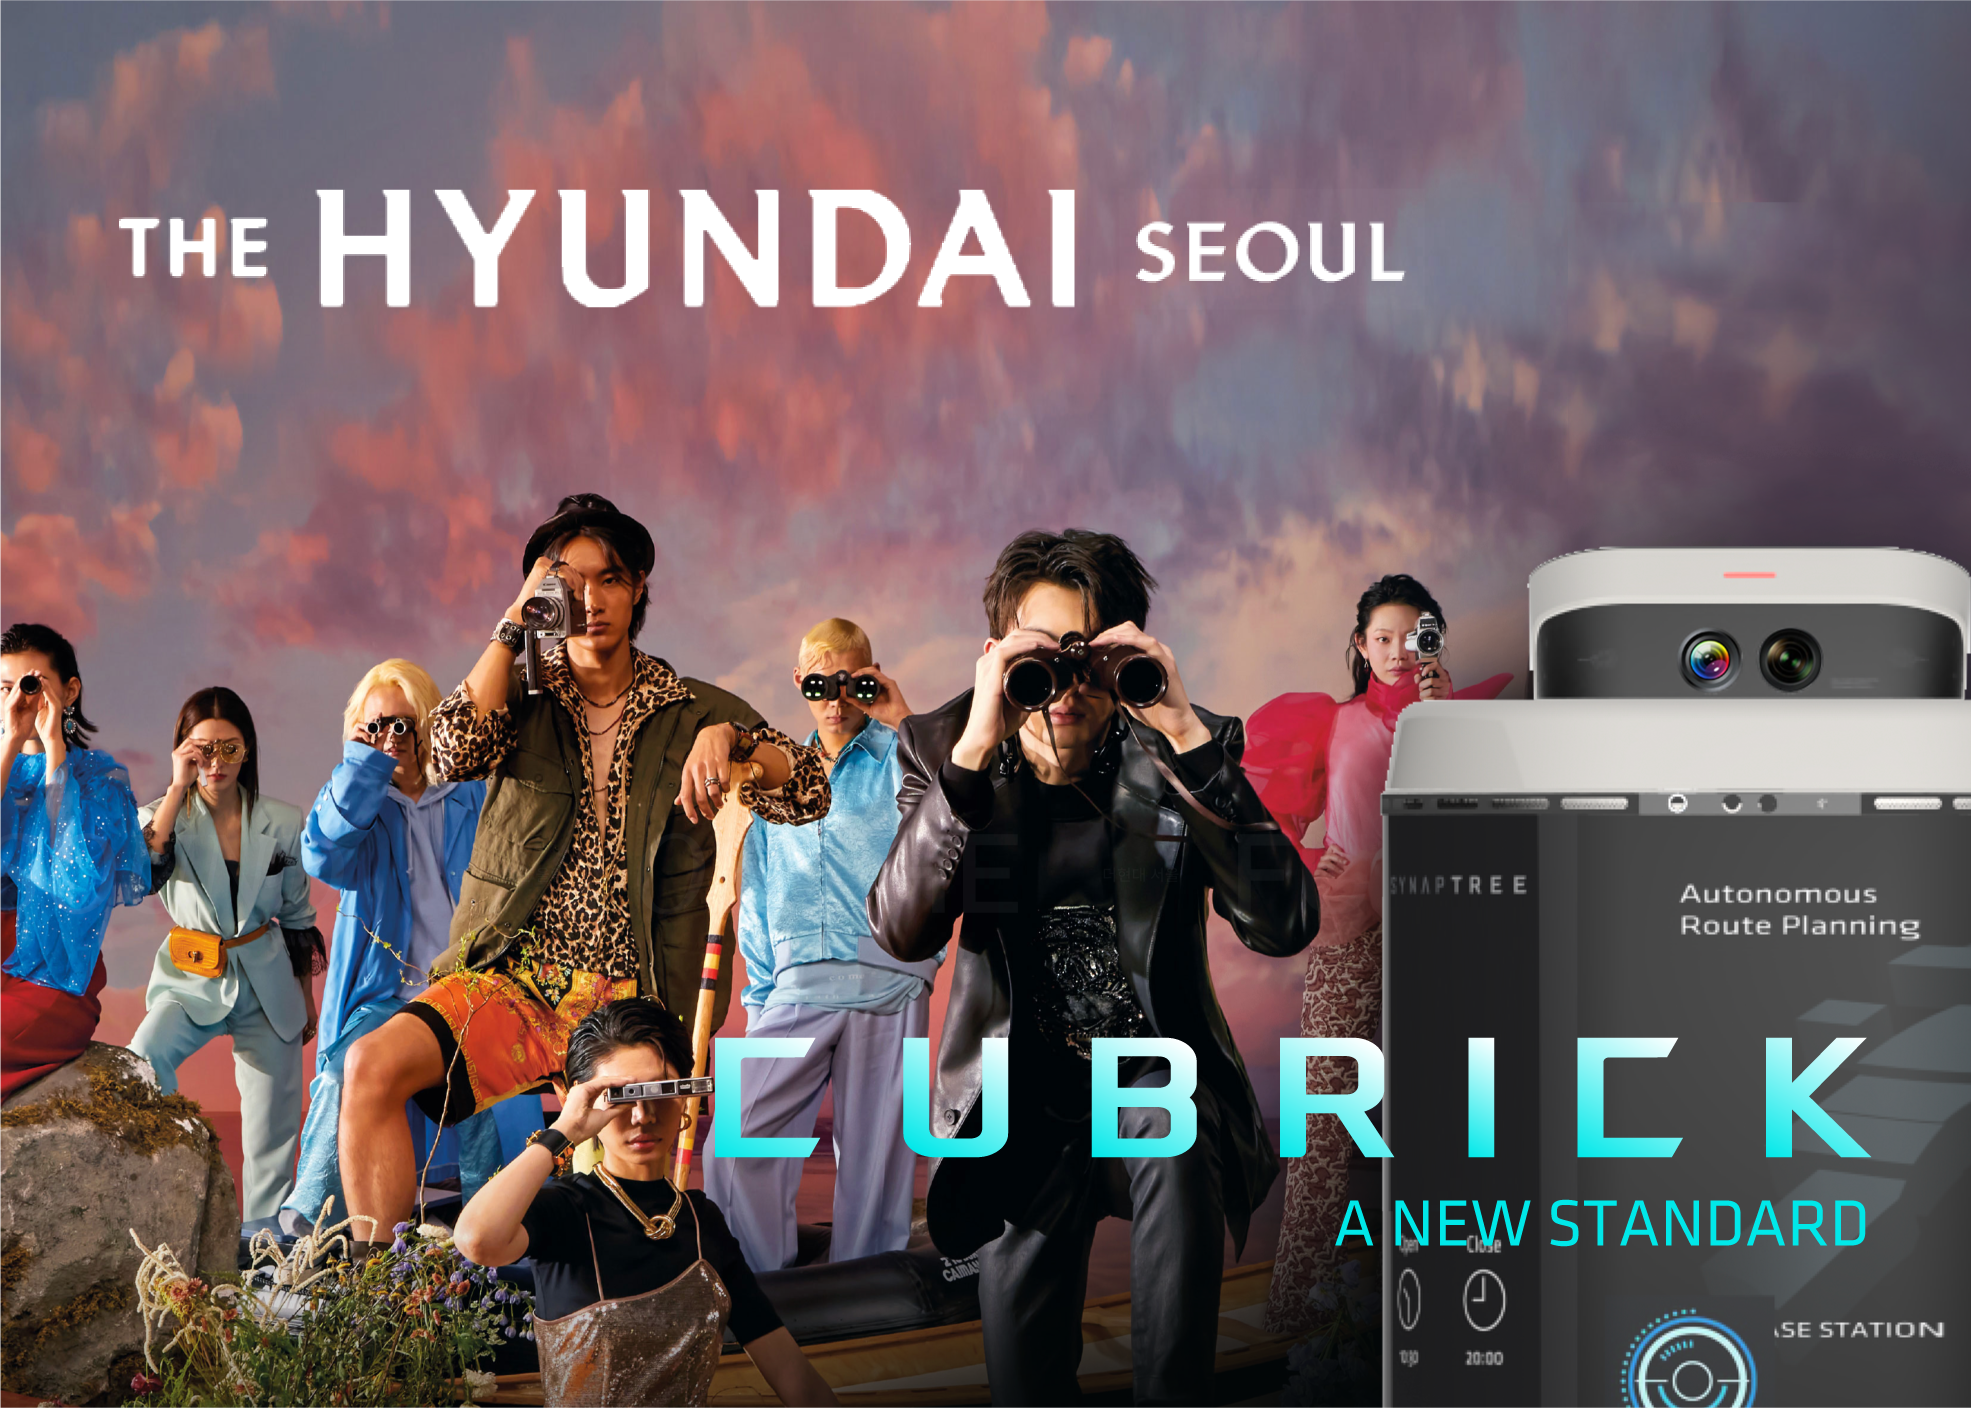 The Hyundai Seoul